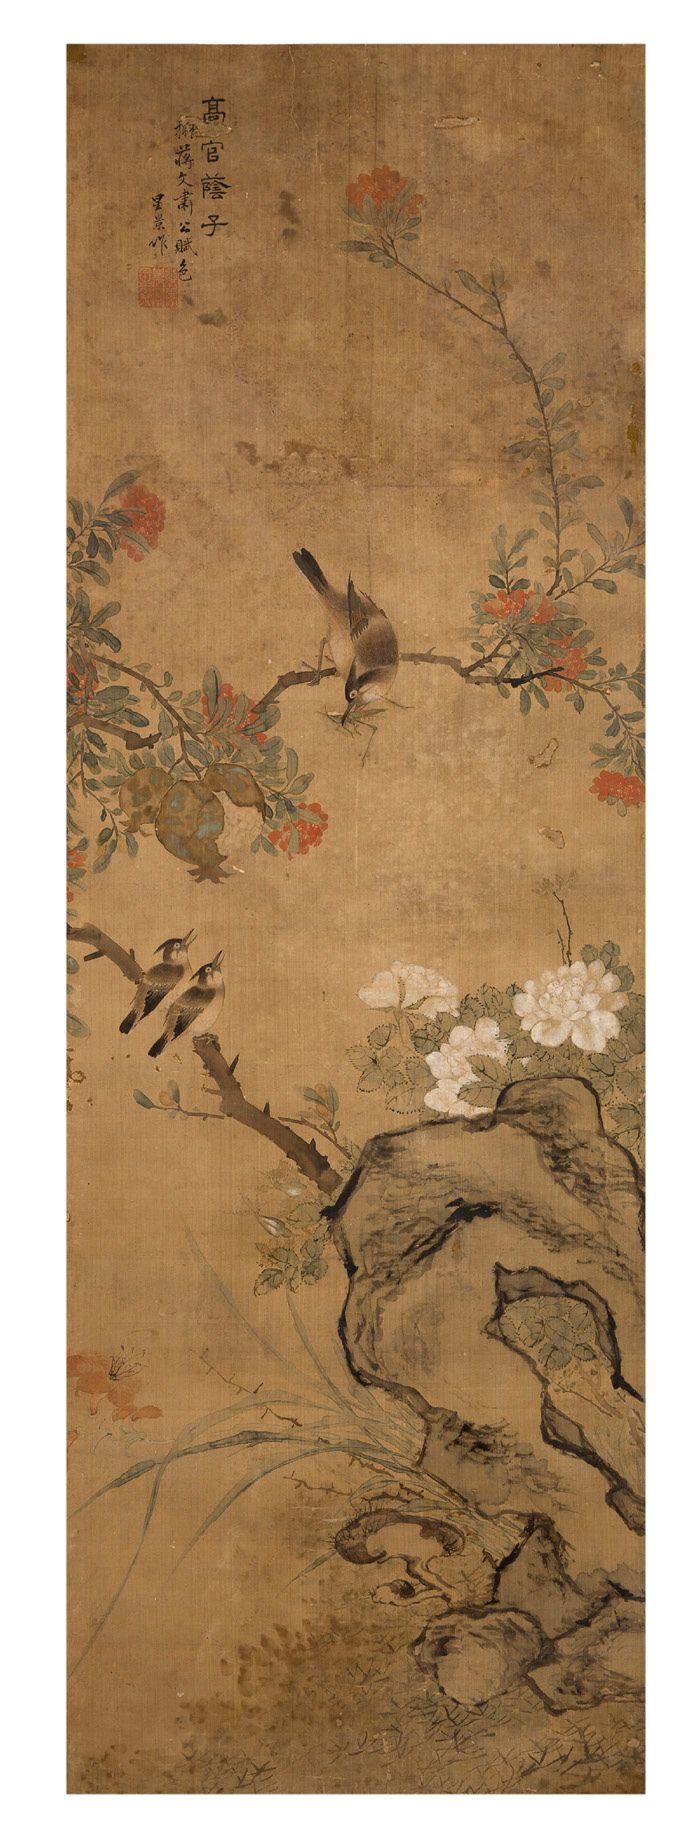 CHINE DYNASTIE QING, XIXe SIÈCLE 中国 清代 19世纪
卷轴画